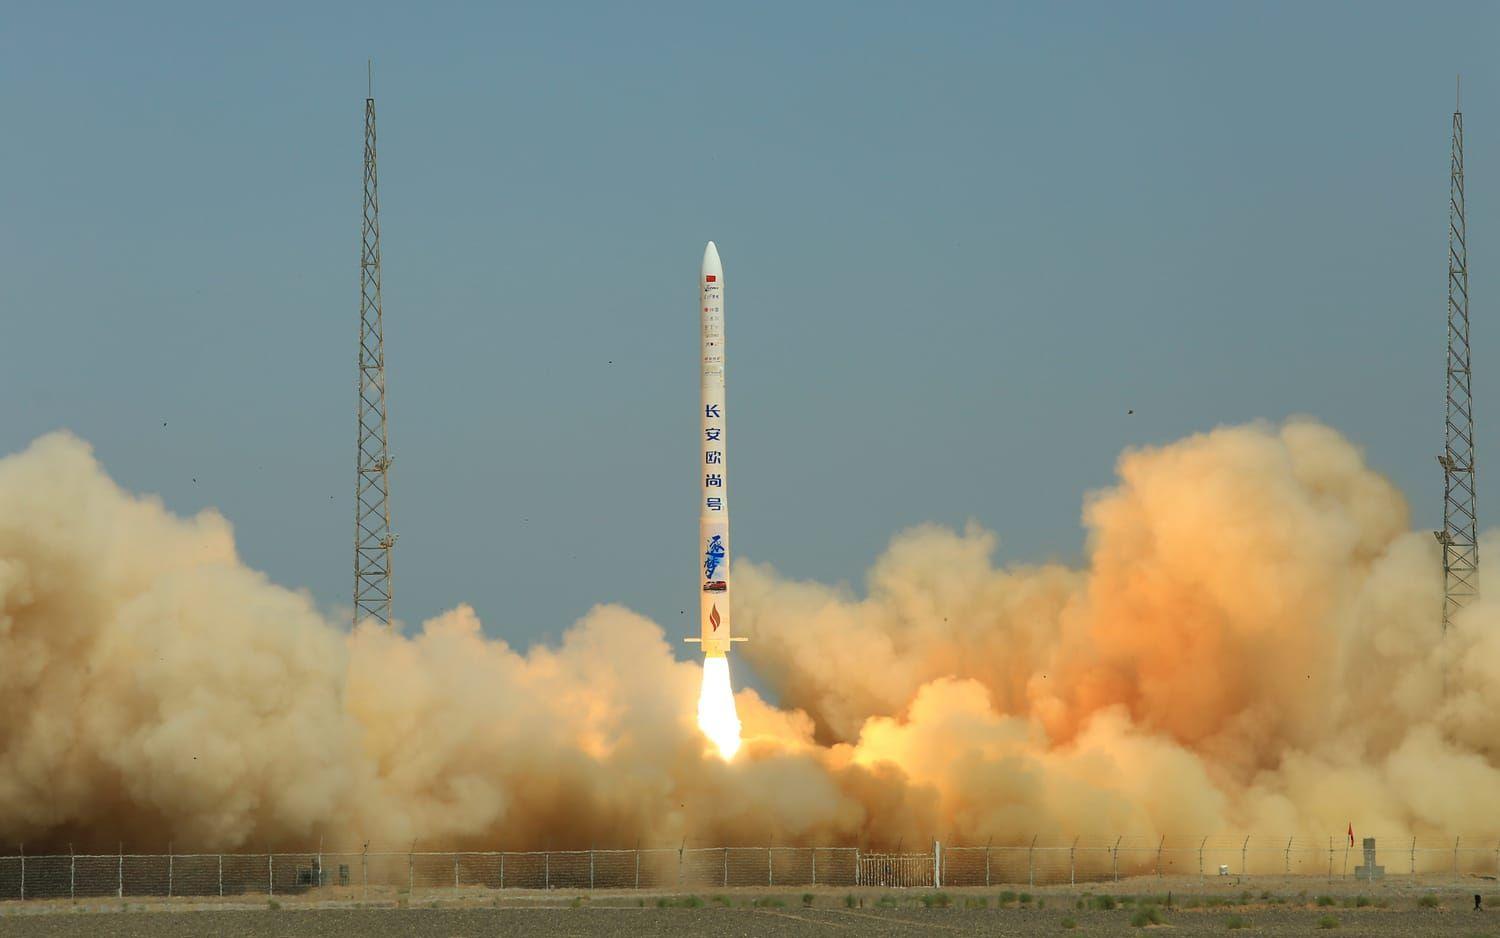 Privata bolag, bland annat Geely, har gett sig in i den kommersiella rymdkapplöpningen. Kinesisk rymdteknik är dock under sanktion av USA sedan länge. På bilden syns raketen SQX-1 från bolaget i-Space lyfta från ett rymdcenter i Jiuquan i nordvästra Kina.